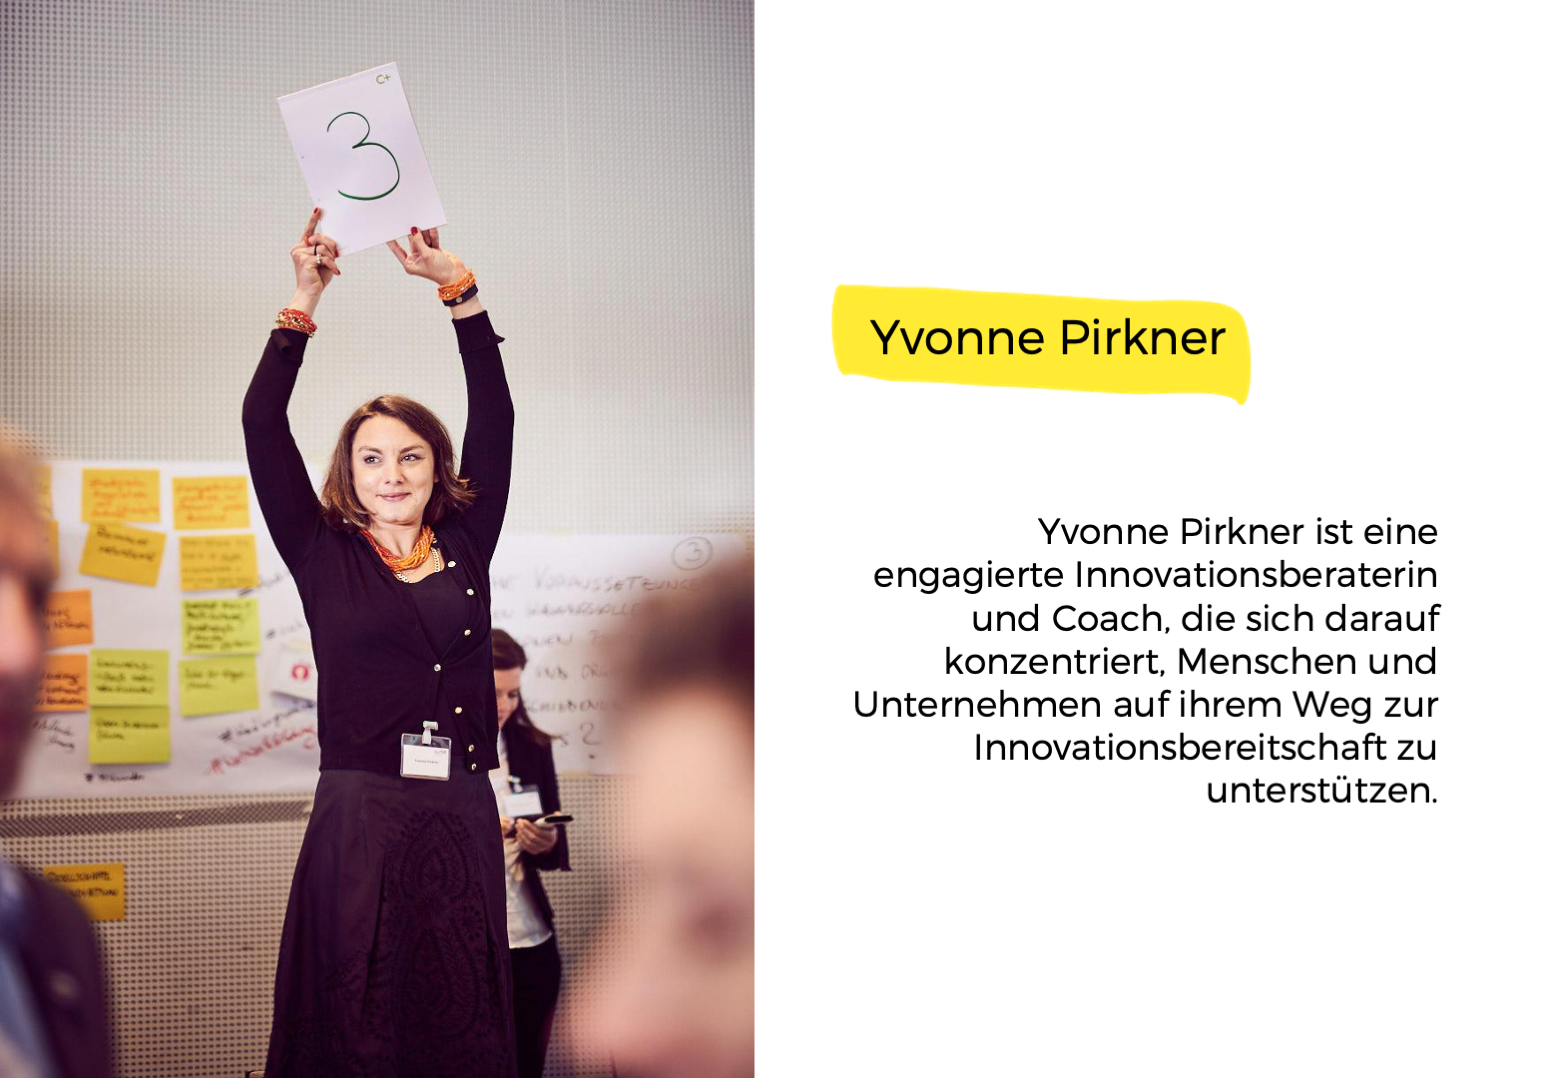 Yvonne Pirkner